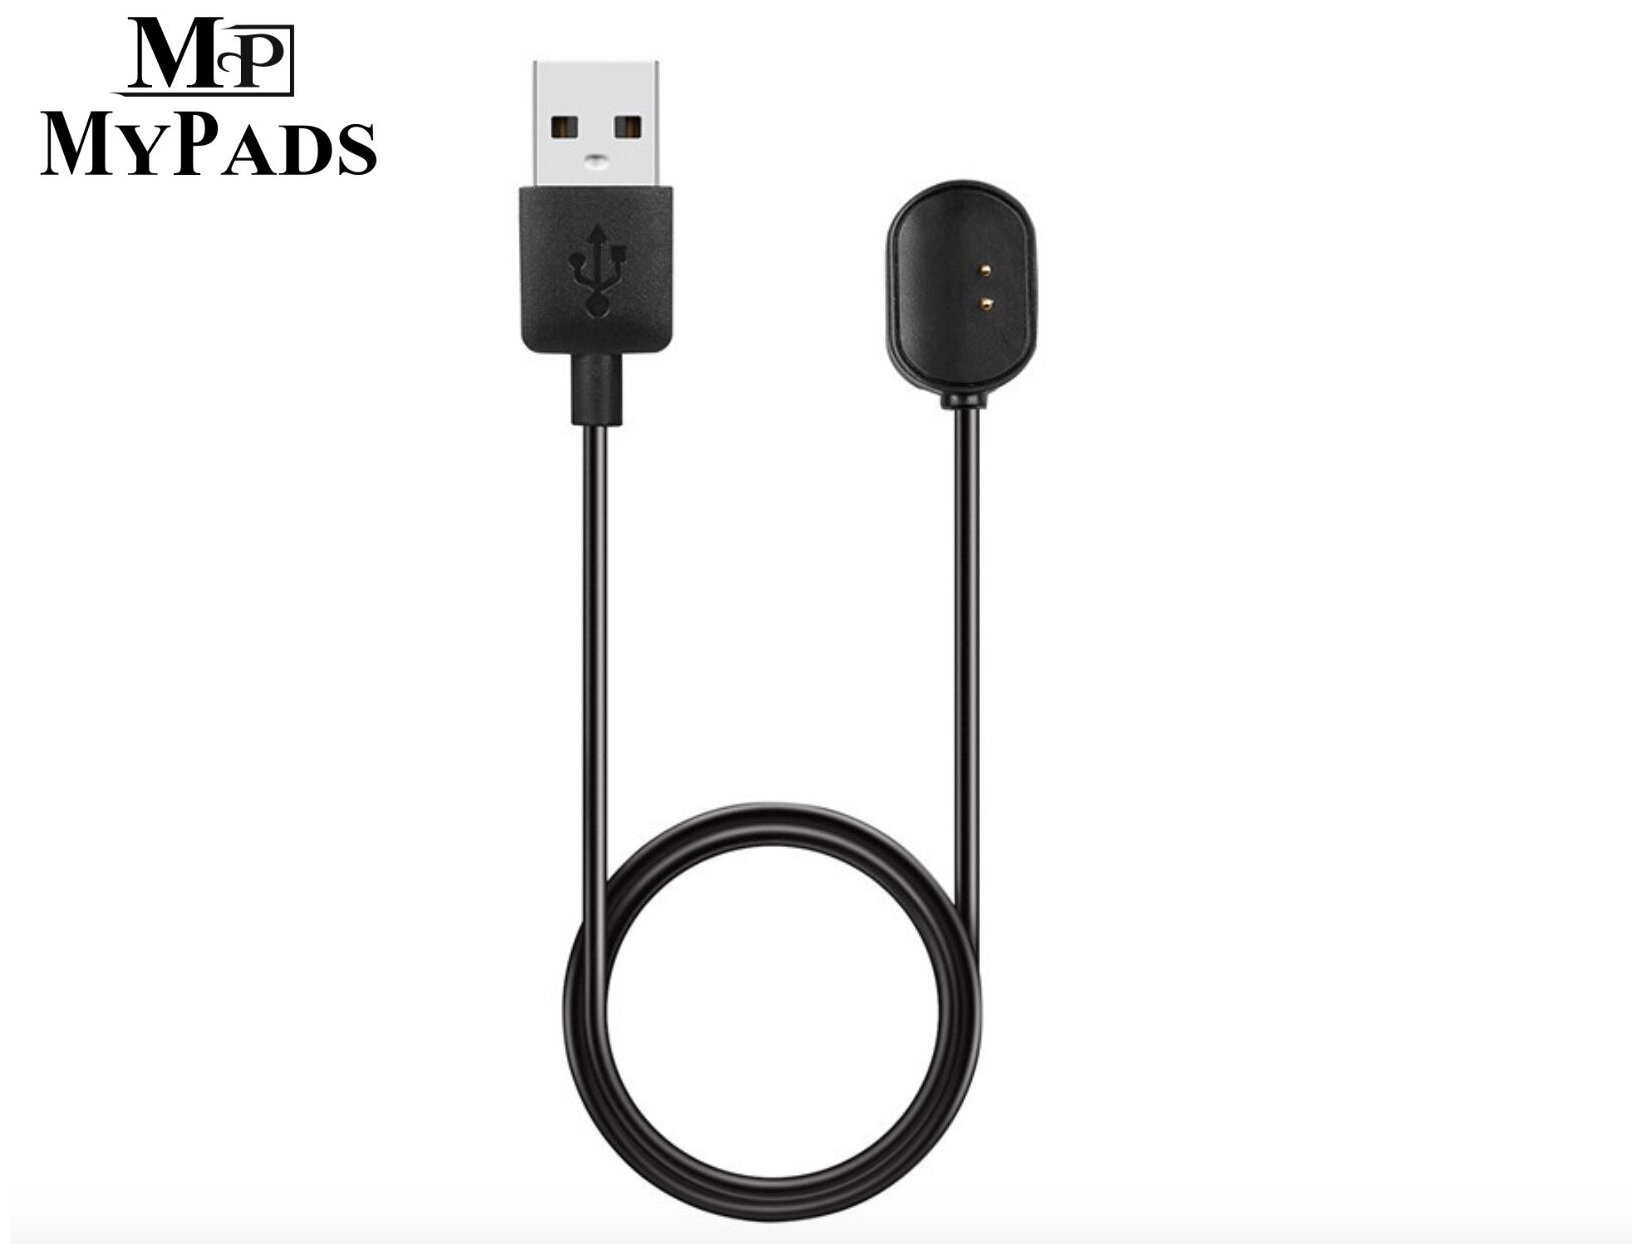 USB-зарядное устройство кабель док-станция магнитная база MyPads для умногоарт-браслета Xiaomi Amazfit Band 2 (A1713)/ Amazfit Cor 2 (A1712)